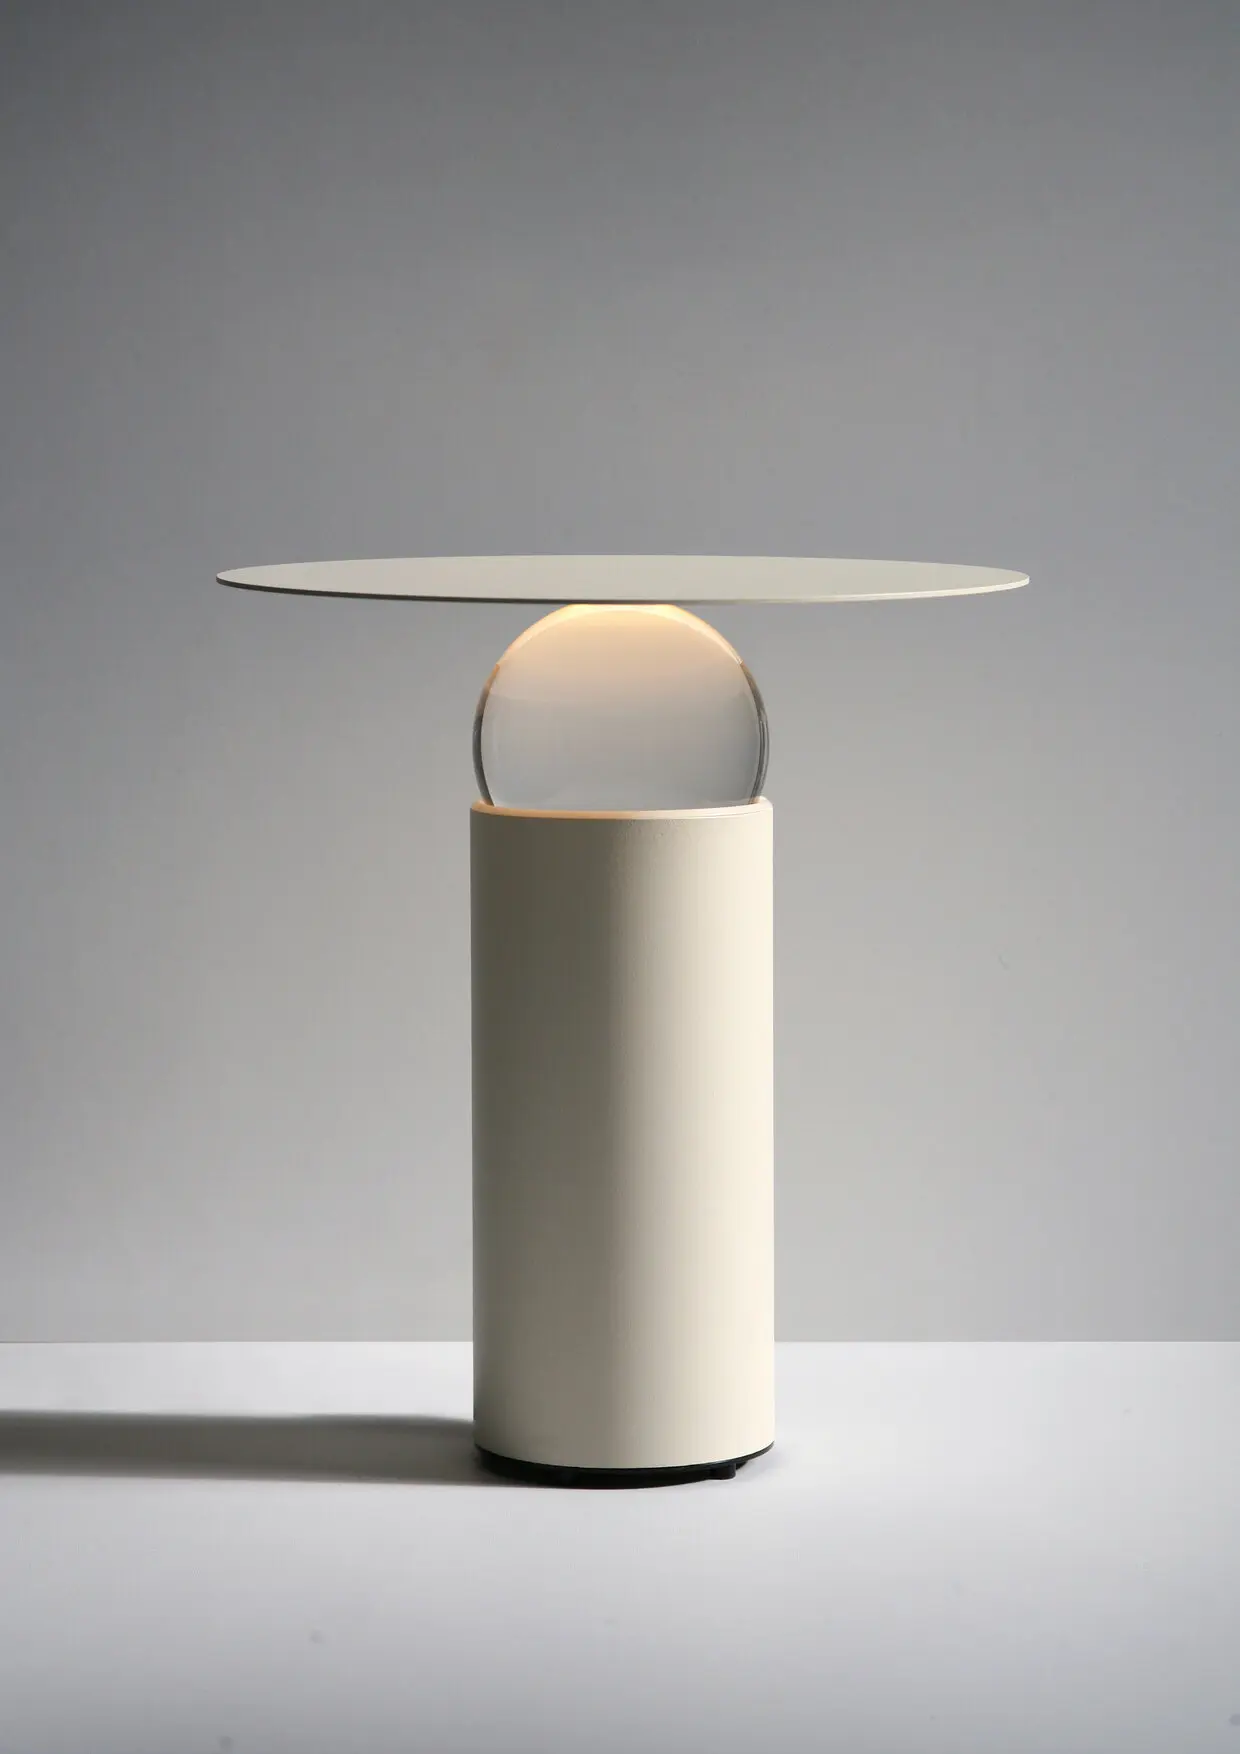 SFIR lamp by Johannes Budde _ Lighting design _ 1